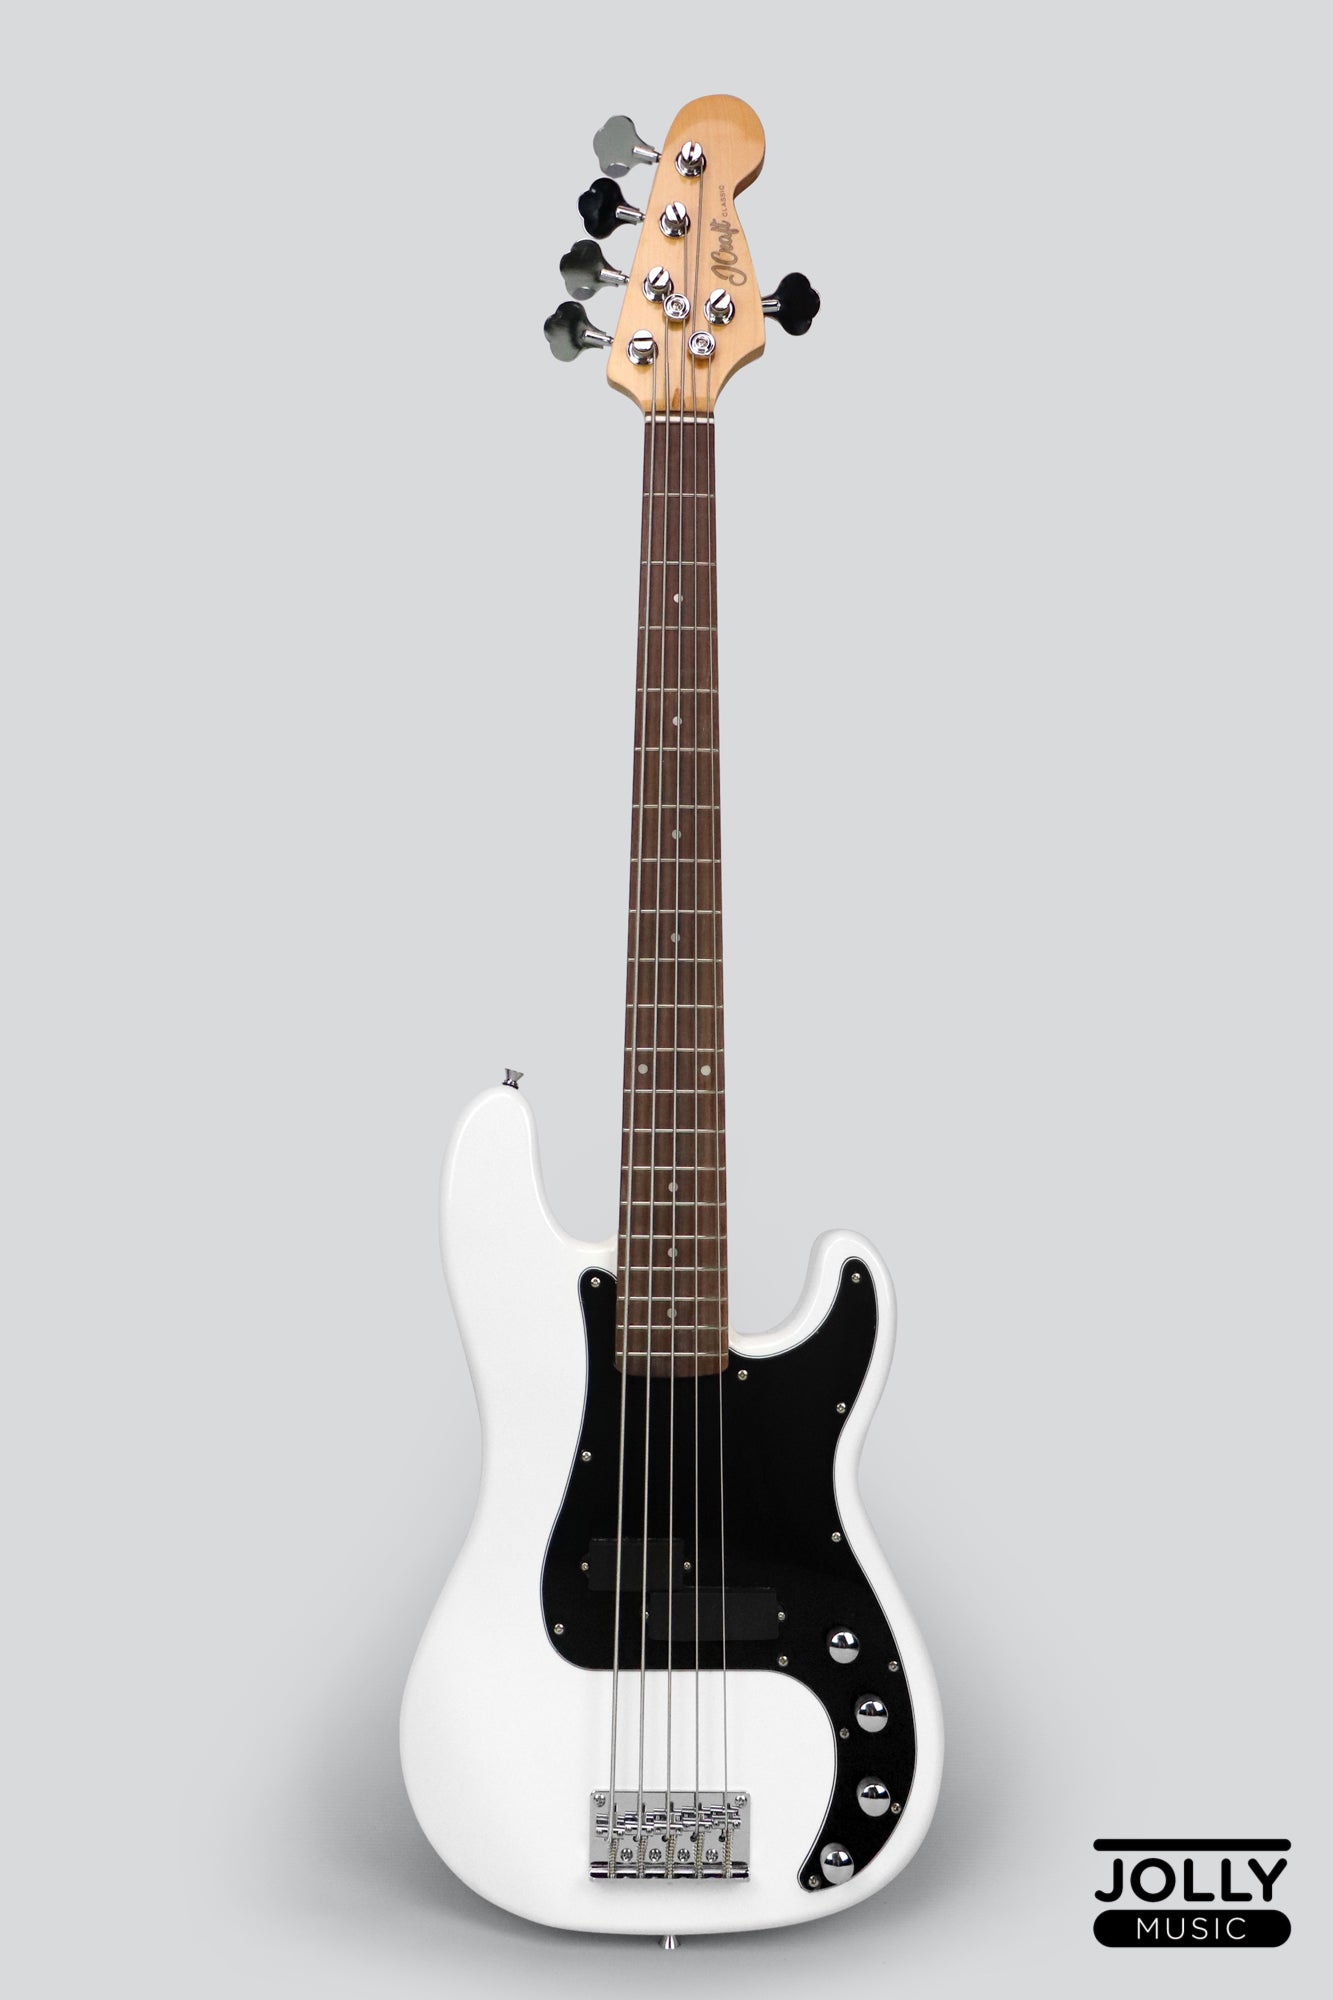 JCraft PB-2A Active 5-String Bass Guitar - Black